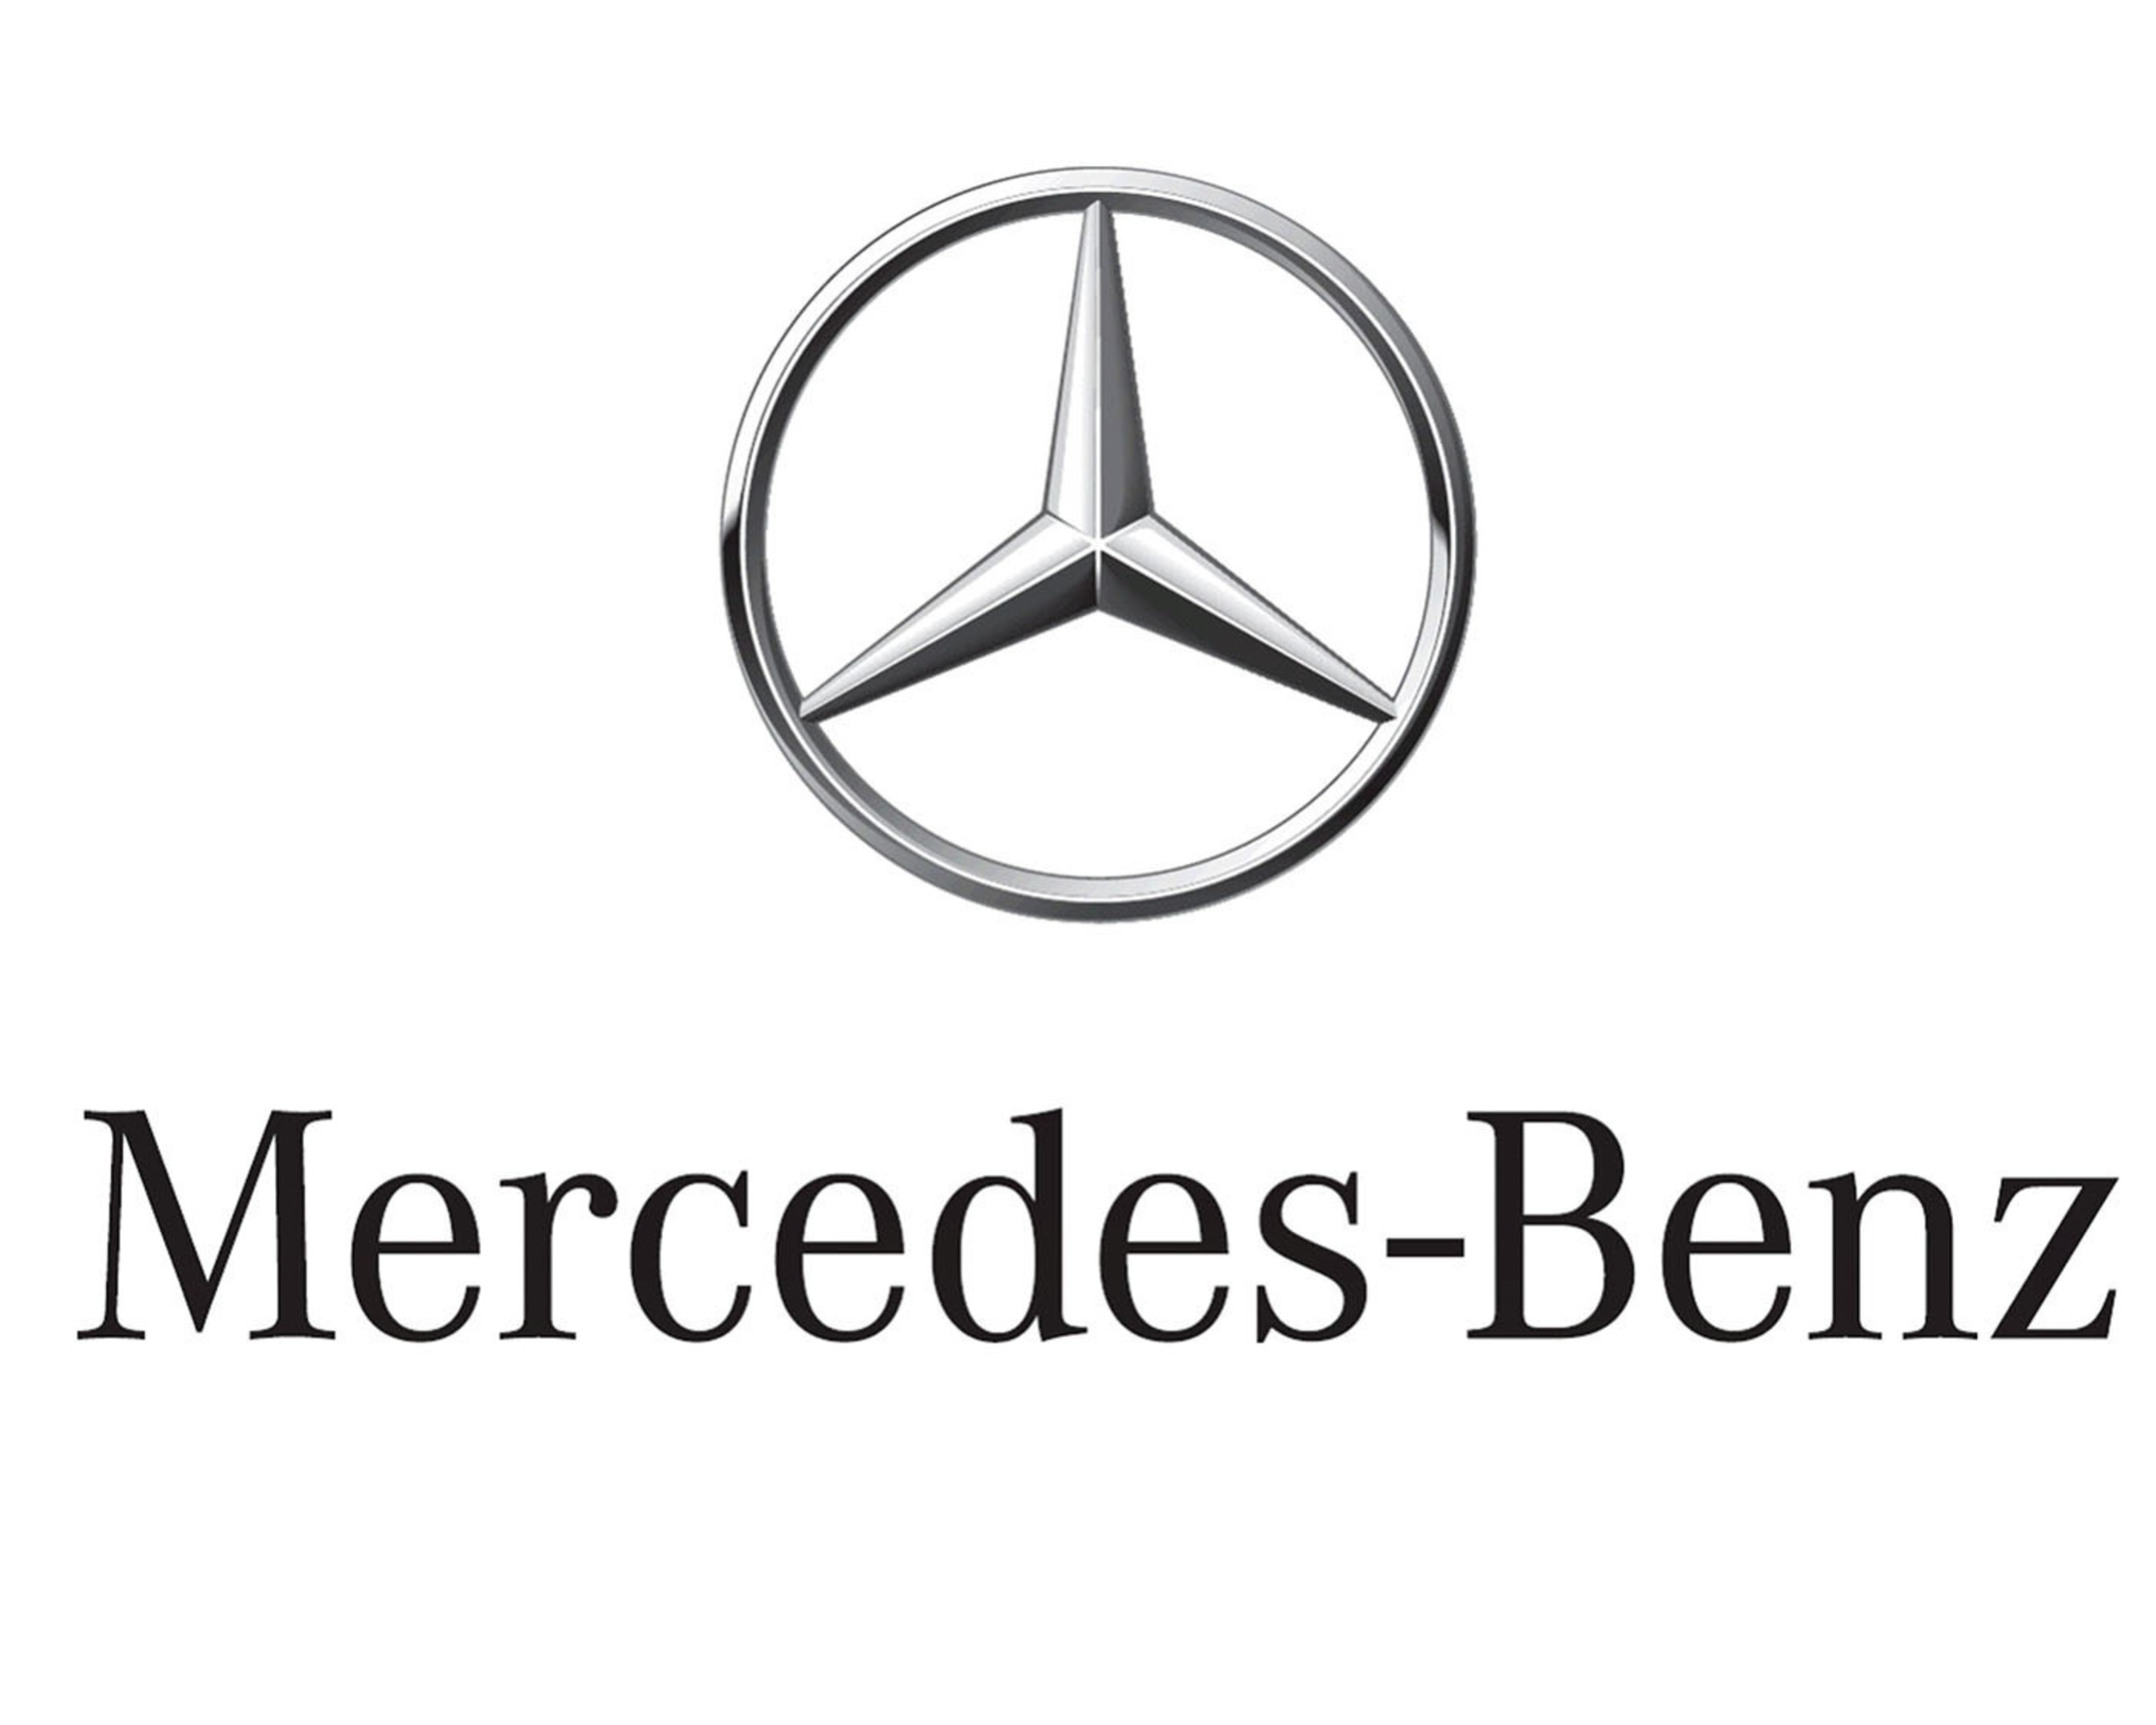 New 2011 3D Mercedes-Benz USA logo. (PRNewsFoto/Mercedes-Benz USA) (PRNewsFoto/)